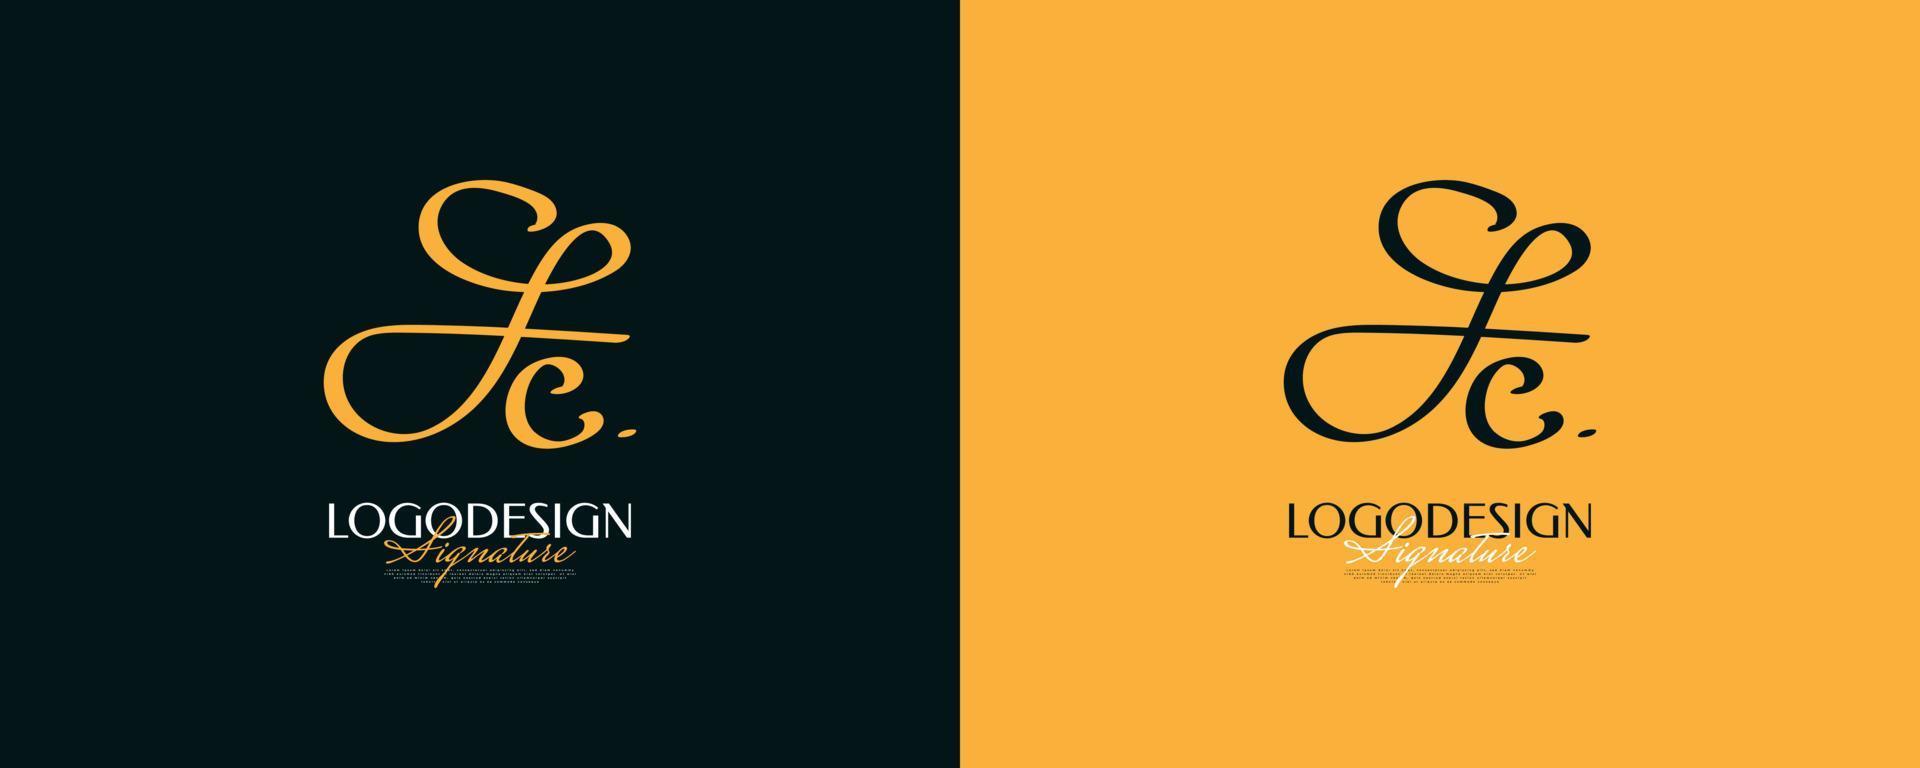 diseño inicial del logotipo f y c con un estilo de escritura elegante y minimalista. logotipo o símbolo de la firma fc para bodas, moda, joyería, boutique e identidad comercial vector